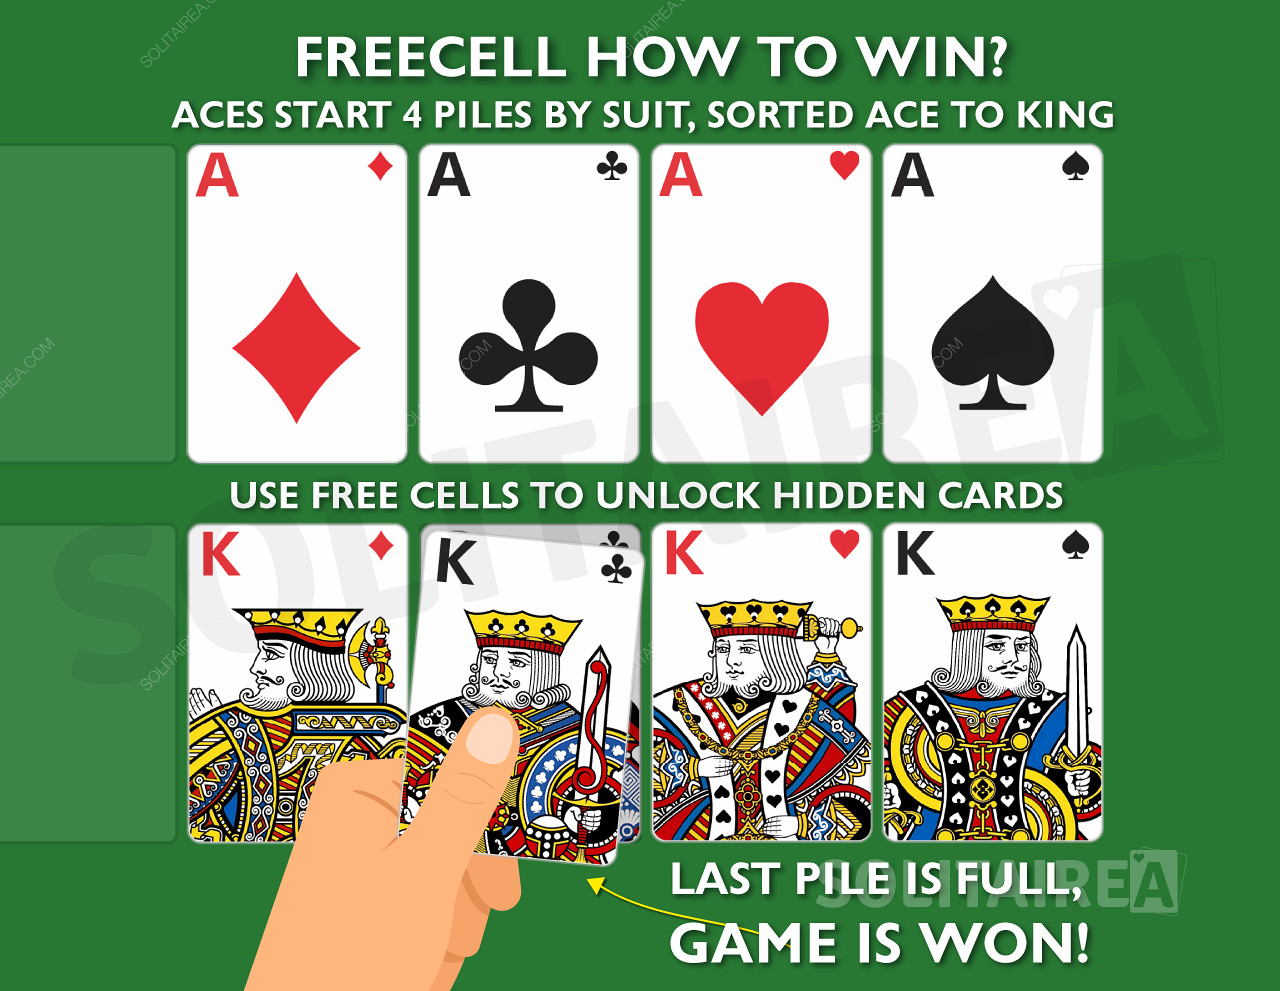 Jak wygrać grę? Skompletuj 4 stosy kart w tym samym kolorze, posortowane od asa do króla.